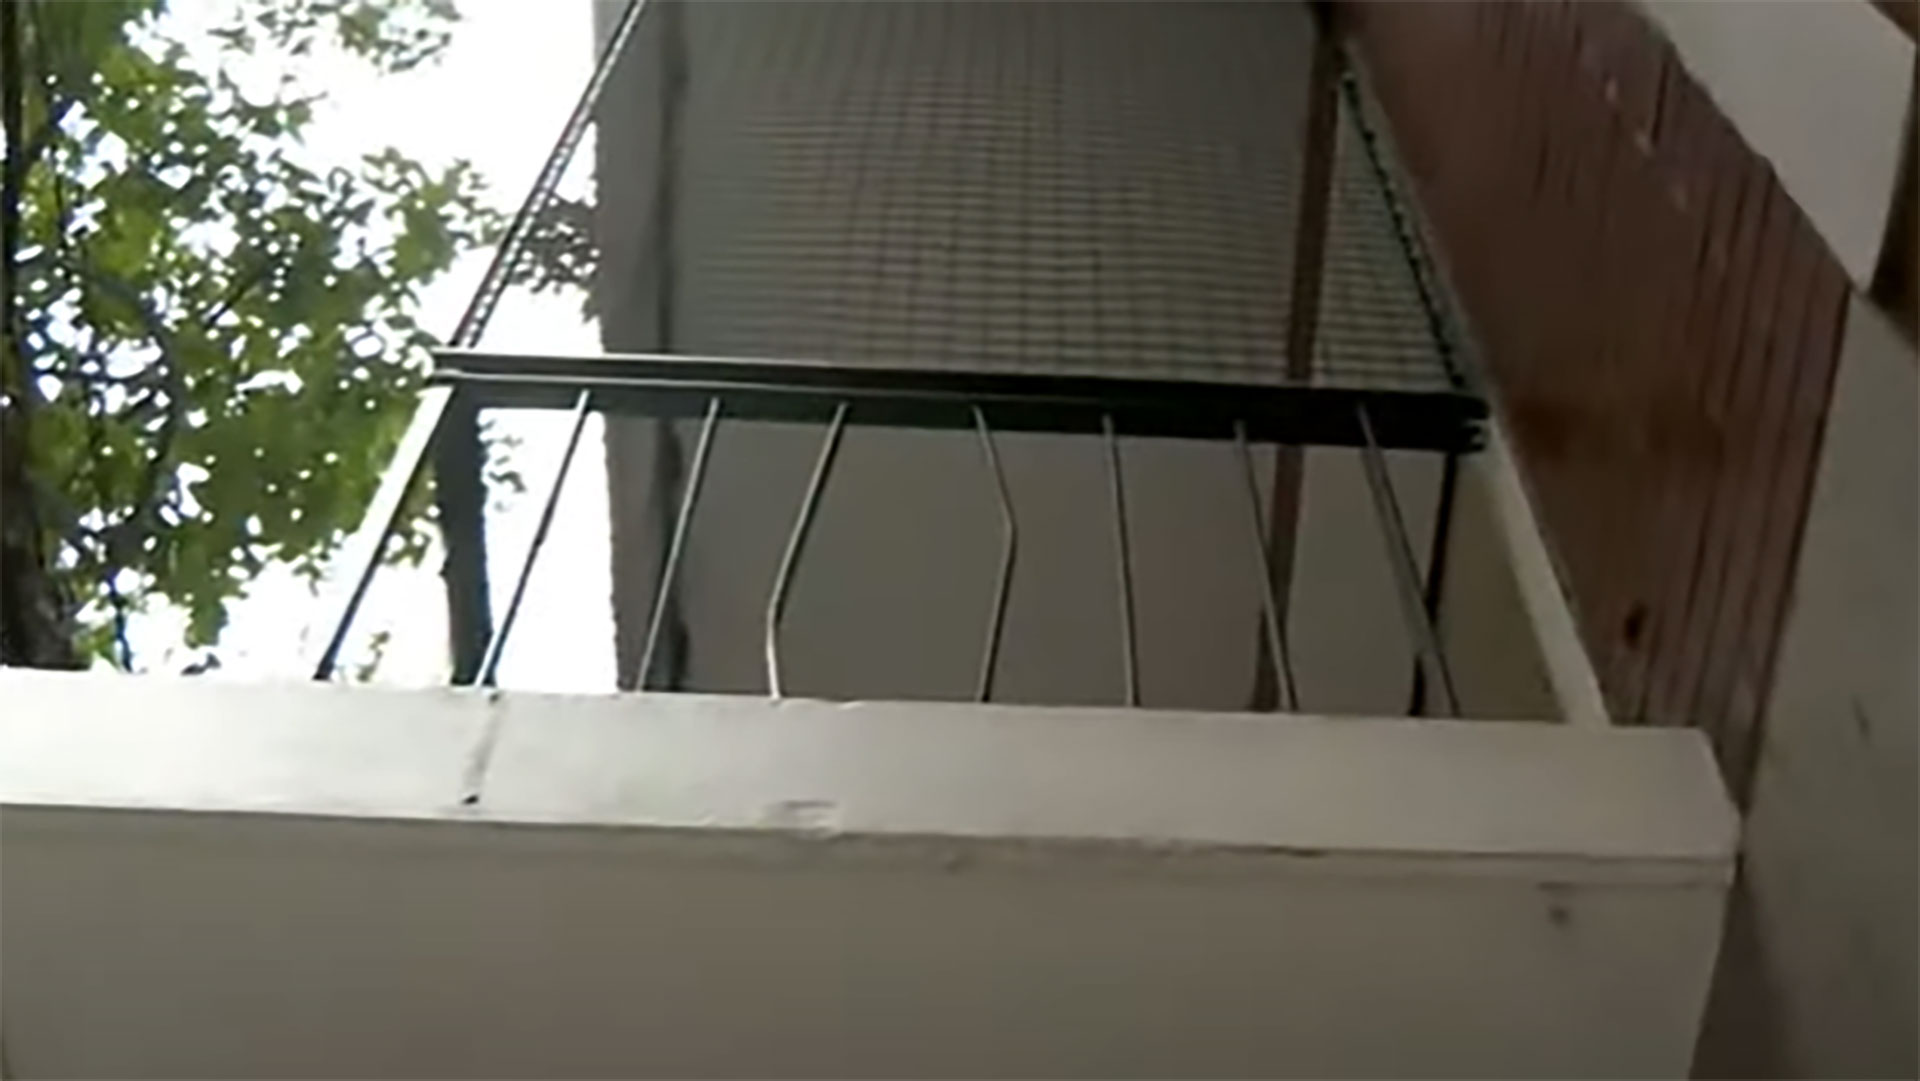 Ladrones forzaron las rejas de los balcones y robaron departamentos a tres cuadras de una comisaría en Recoleta 